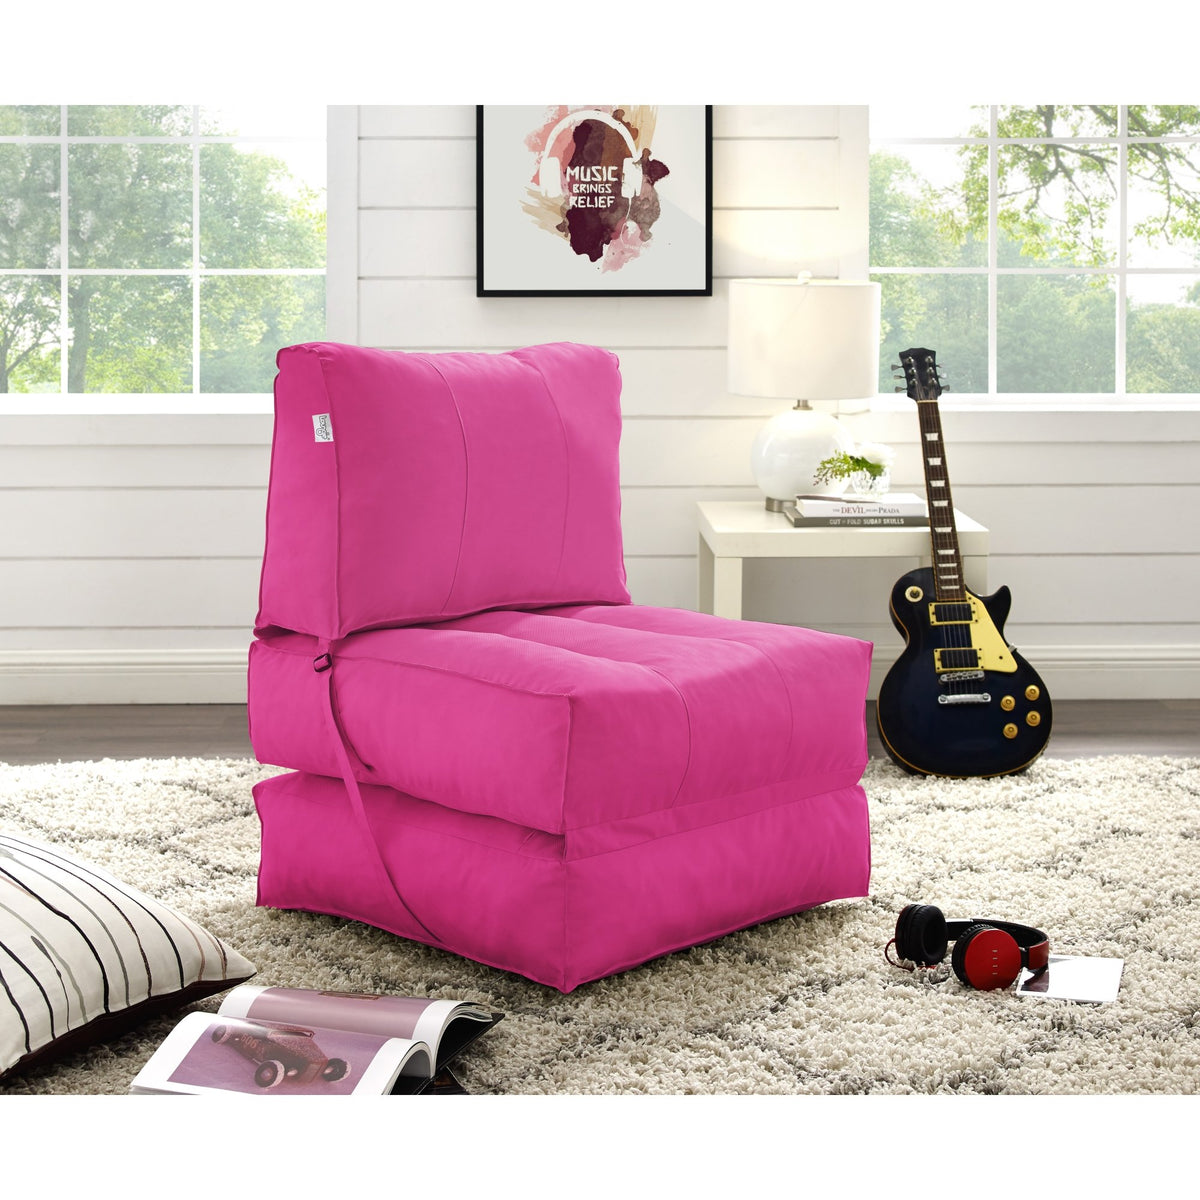 Bean Bag Chair/ Foam Sofa/ Lounge Convertable Chair/ Sleeper Chair/ Memory Foam Sofa/ Flip Chair - Cloudy Bean Bag Convertible Memory Foam Sofa